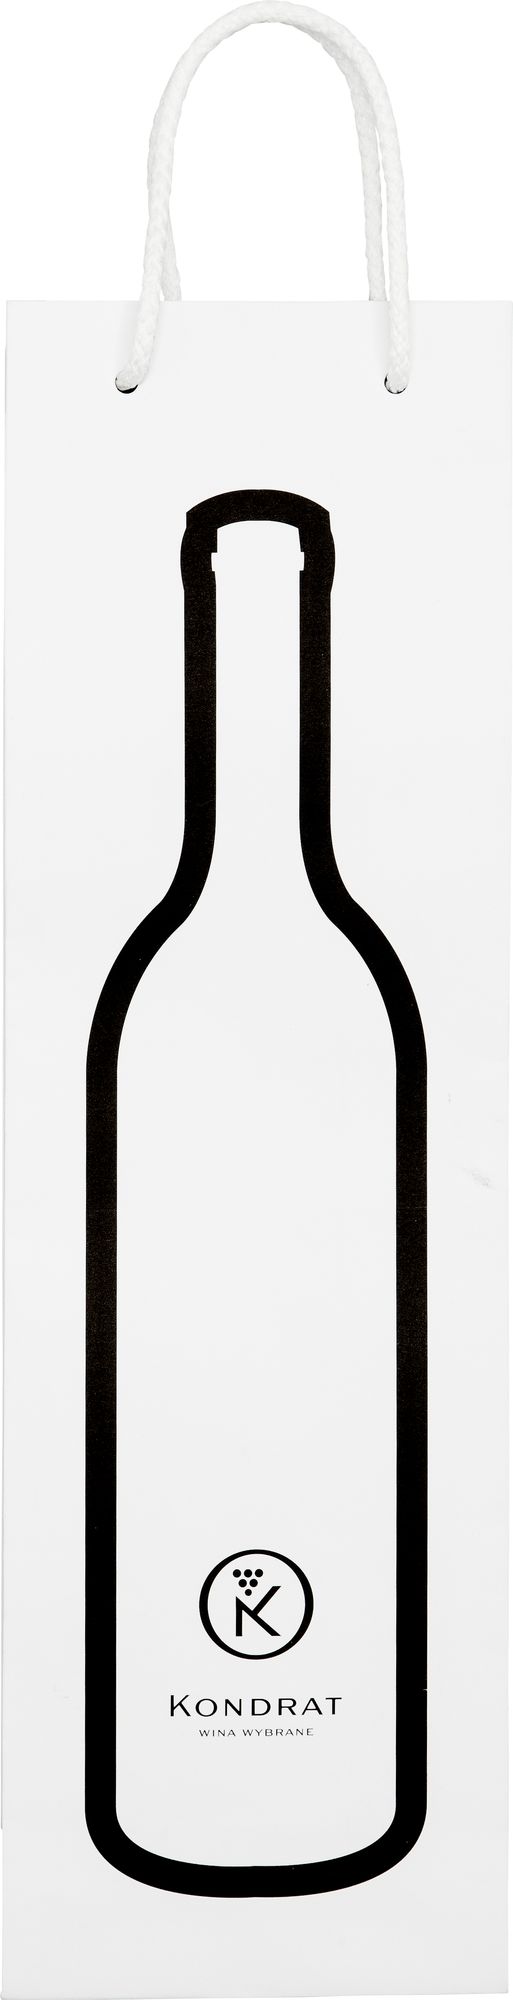 Torebka na wino Torba papierowa biała z grafiką